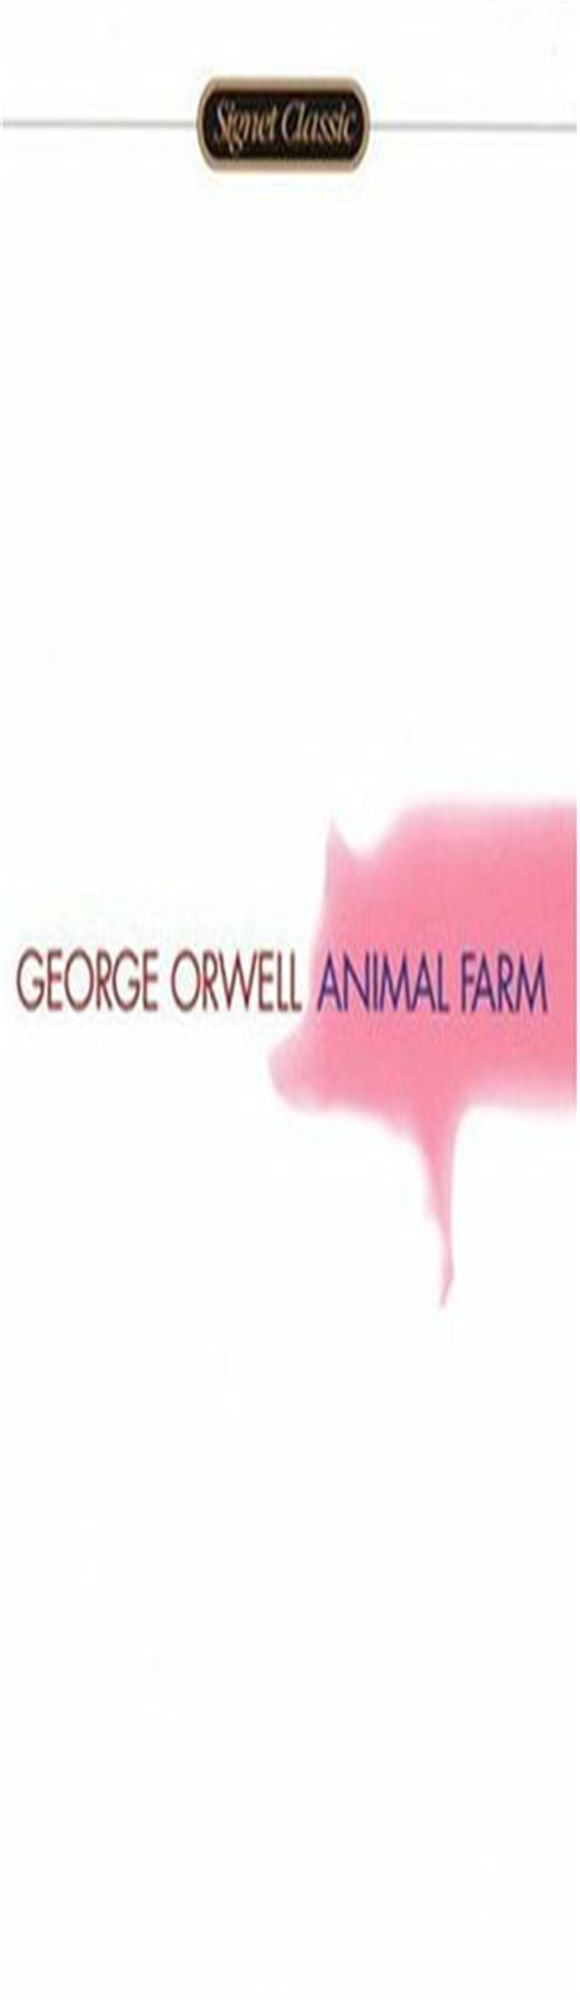 READ [EBOOK] Animal Farm Read %book *ePub - dhokhaethra | Boosty